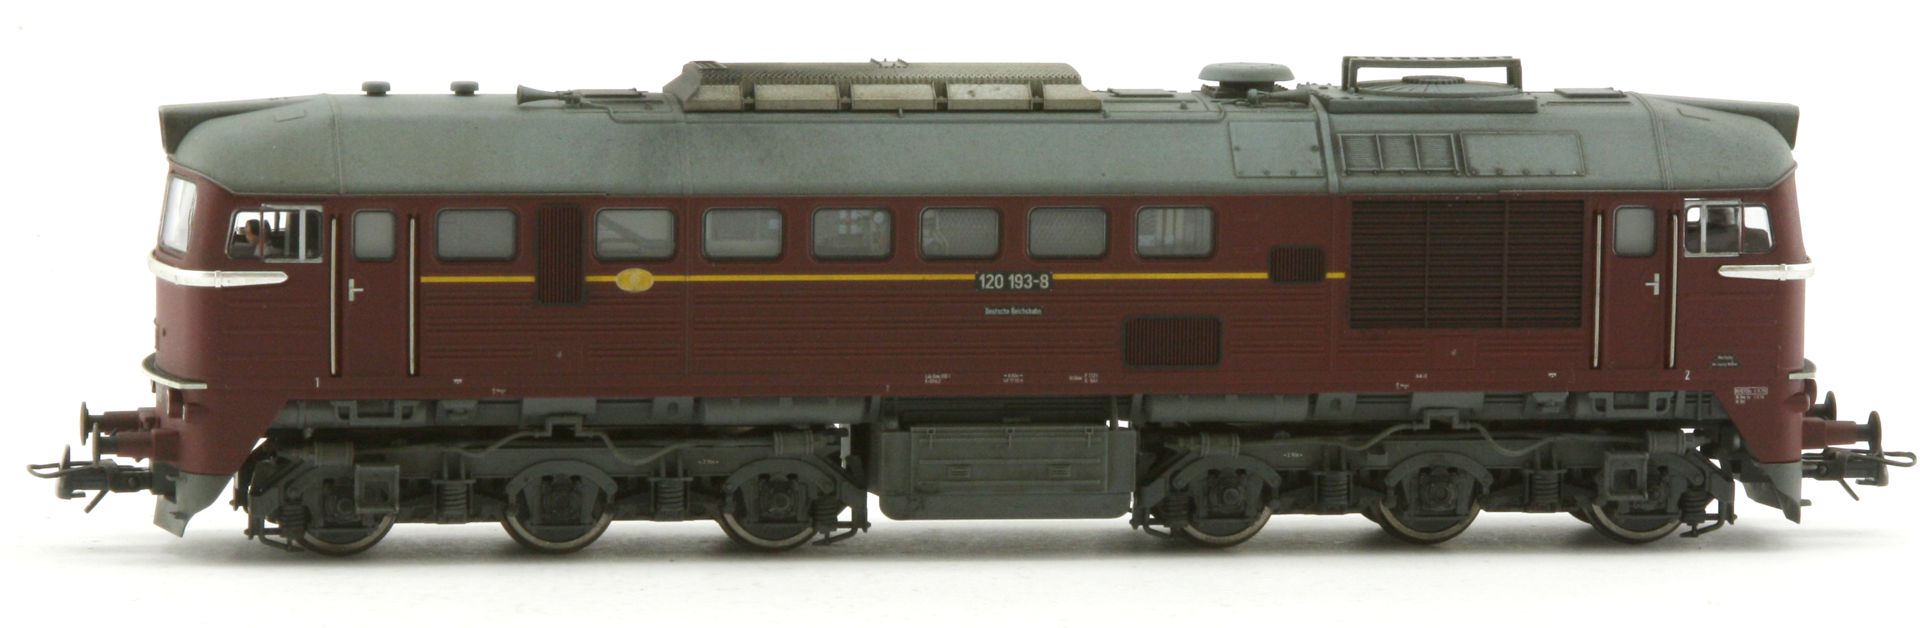 Saxonia 87059 - Diesellok 120 193-8, DR, Ep.IV, DC-Sound, leichte Alterung